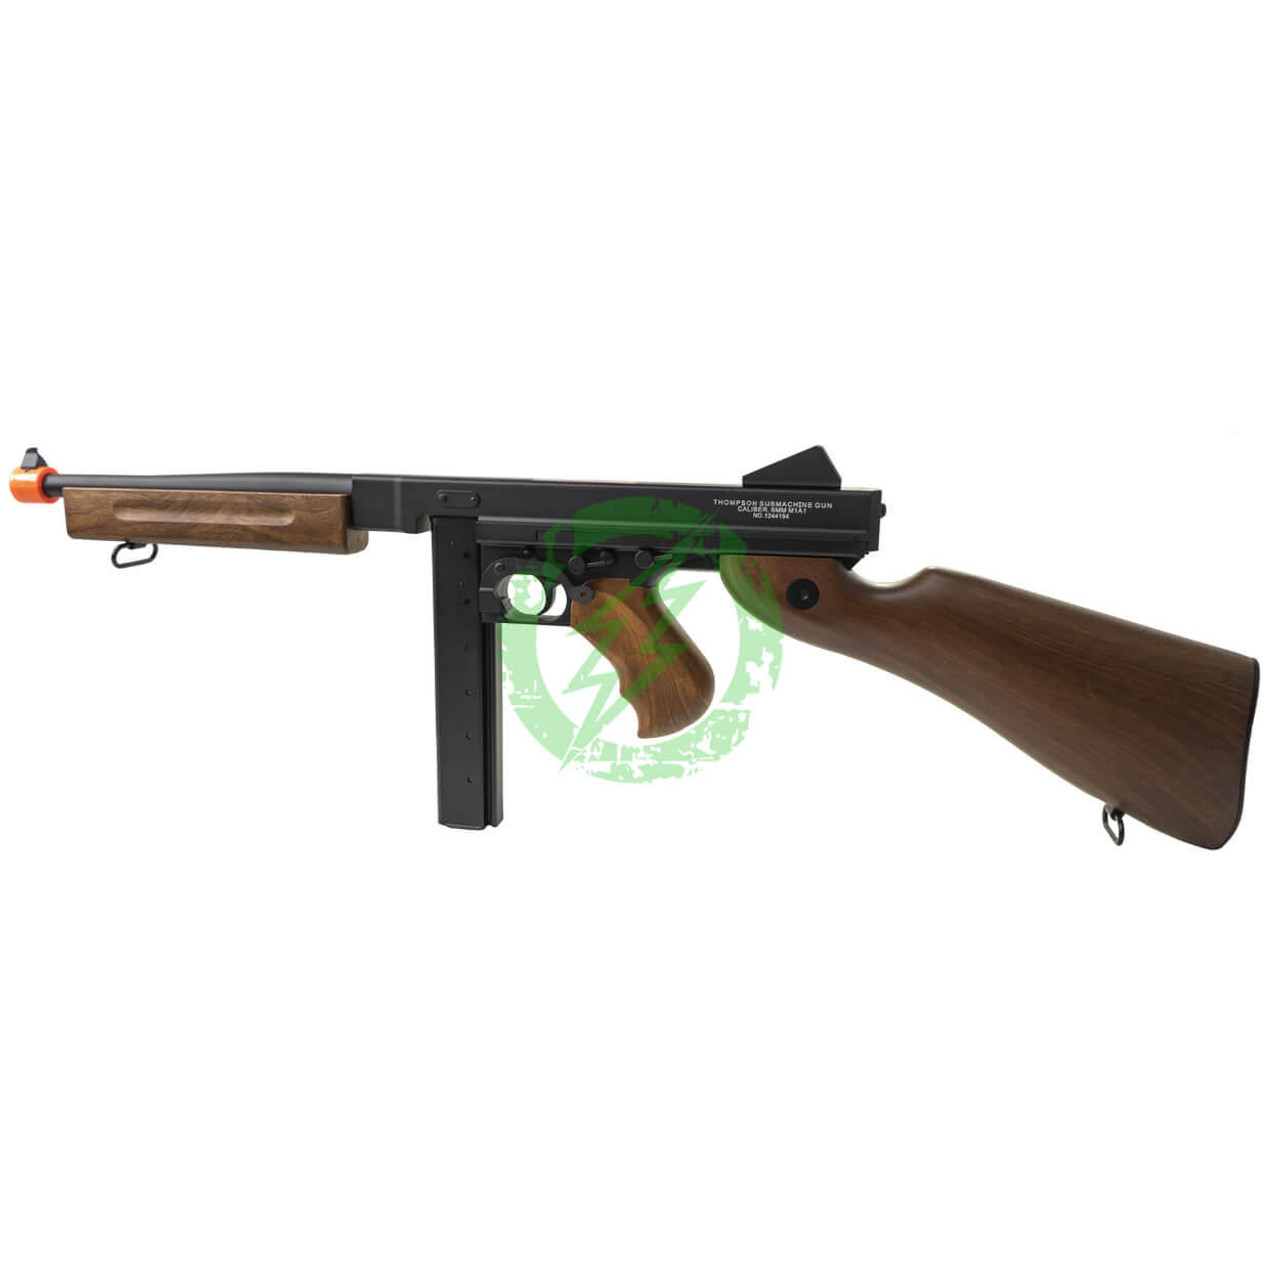  Cybergun Auto Ordnance Licensed Thompson M1A1 Airsoft AEG Rifle w/ Metal Receiver 